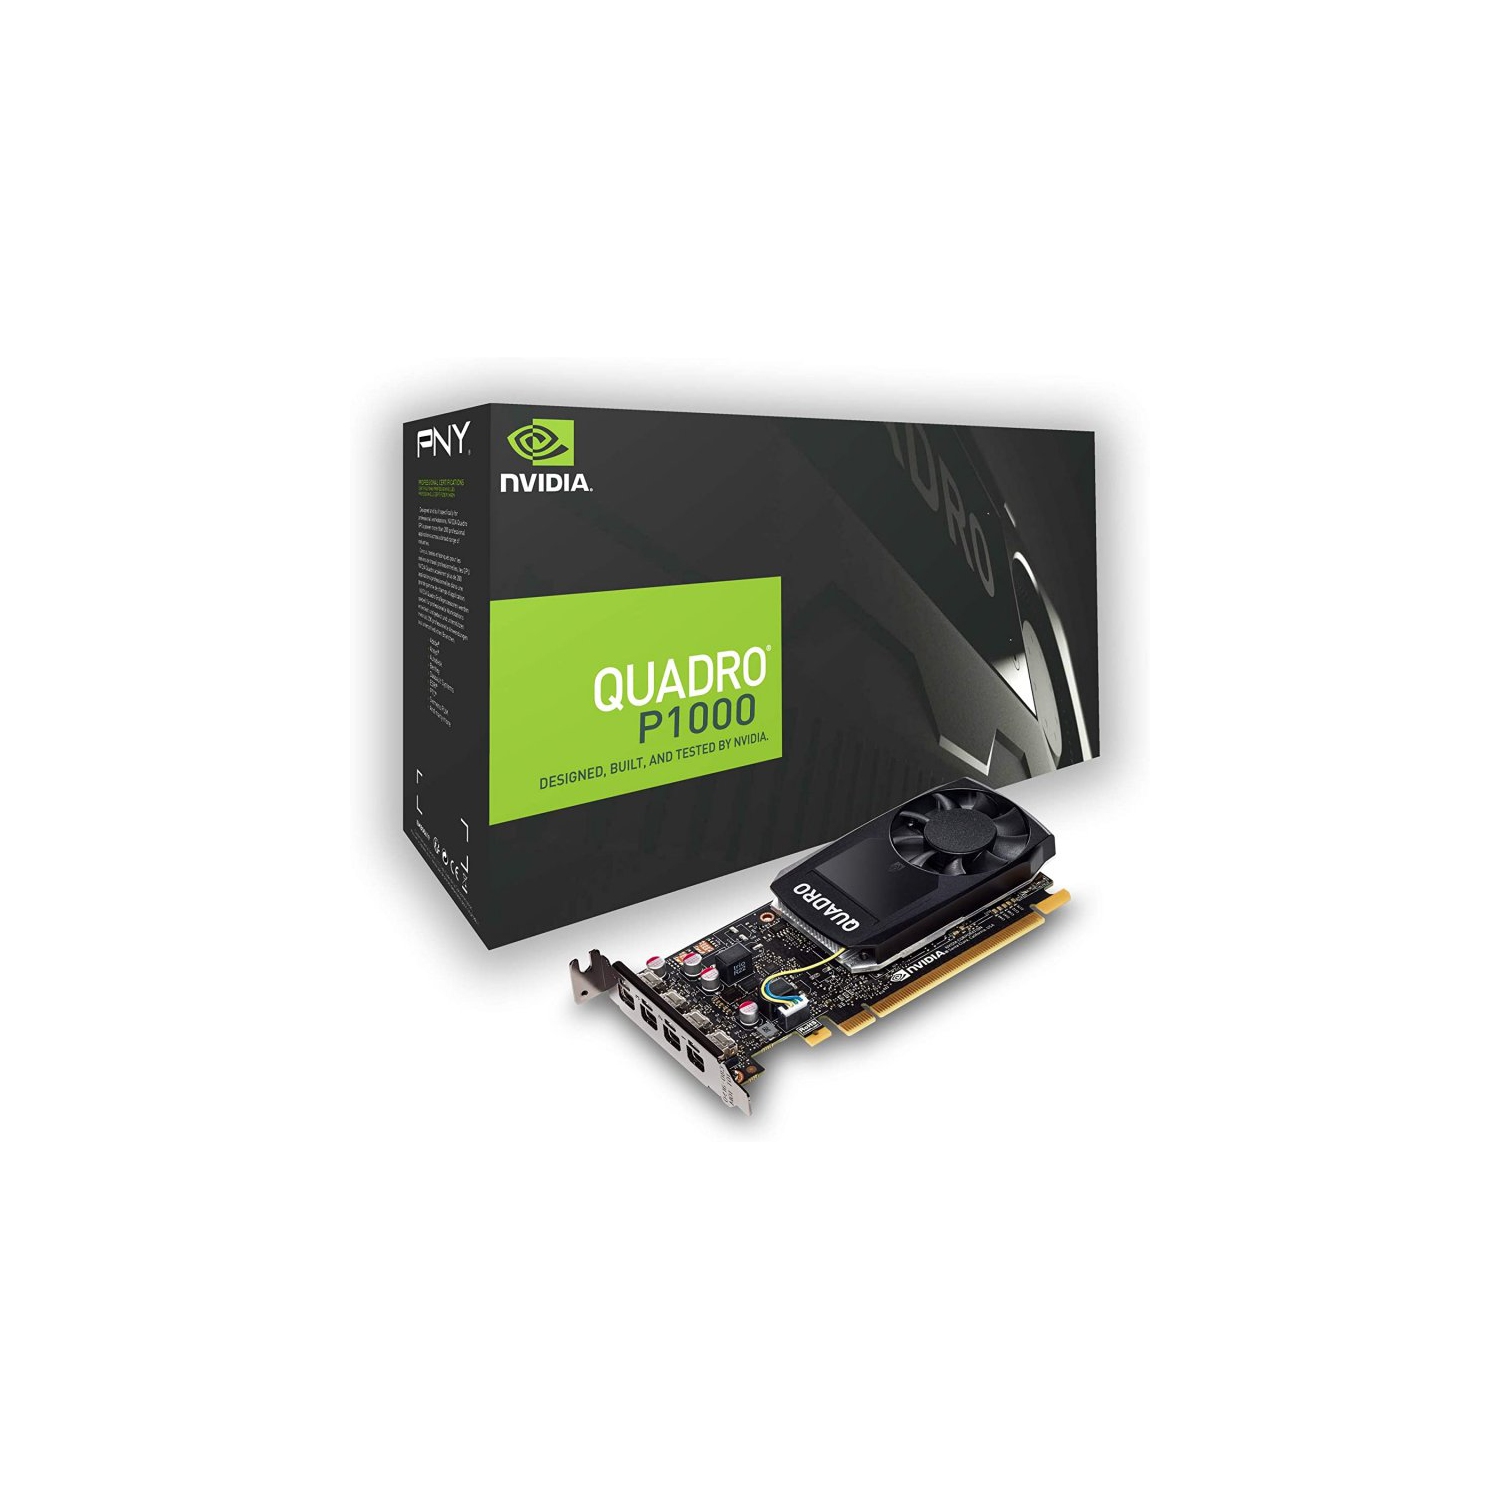 Refurbished (Good) 4.0GB Nvidia Quadro P1000 4K/5K Quad Display Low Profile Bracket/SFF PCI Express videocard